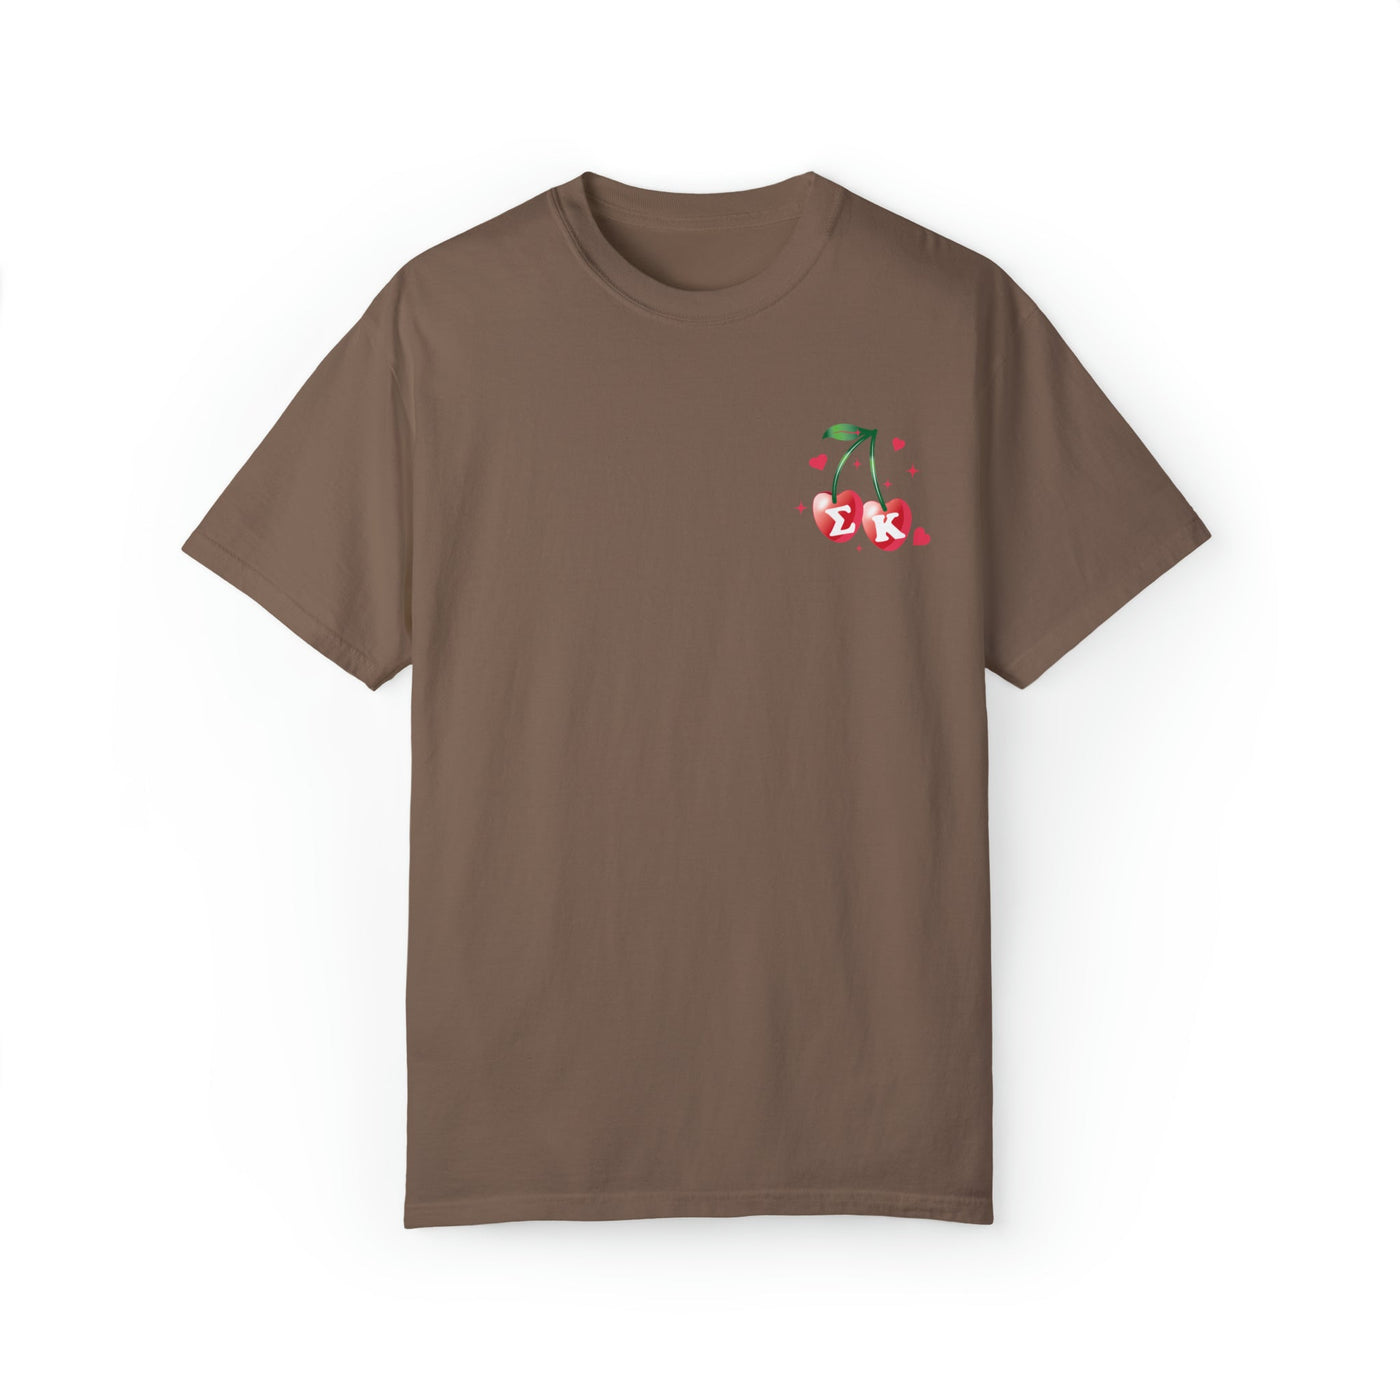 Sigma Kappa Cherry Airbrush Sorority T-shirt